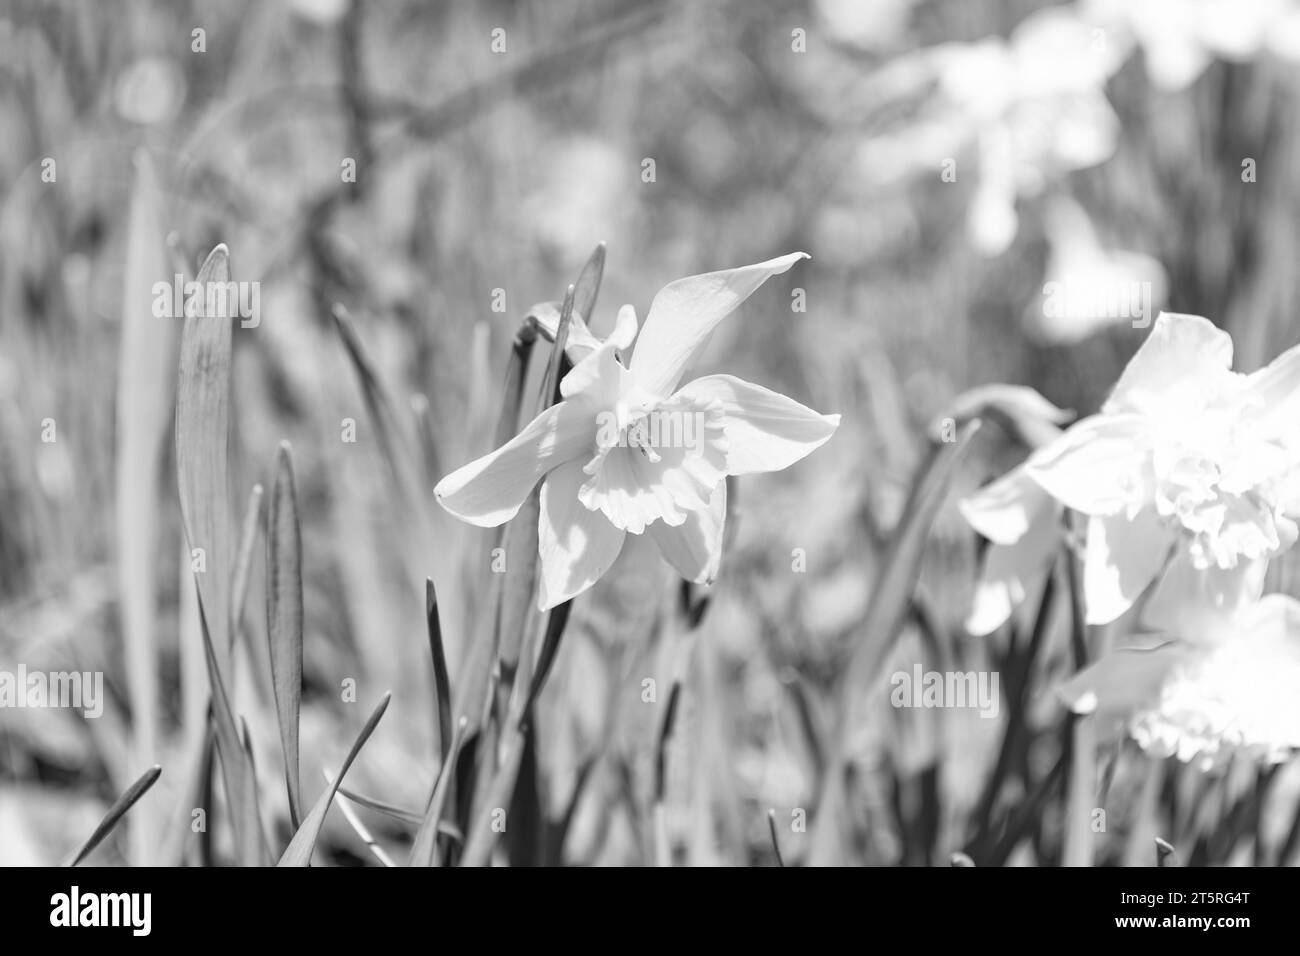 les narcisses jaunes fleurissent en été. photo de la fleur de narcisse. narcisse fleurit au printemps. Banque D'Images